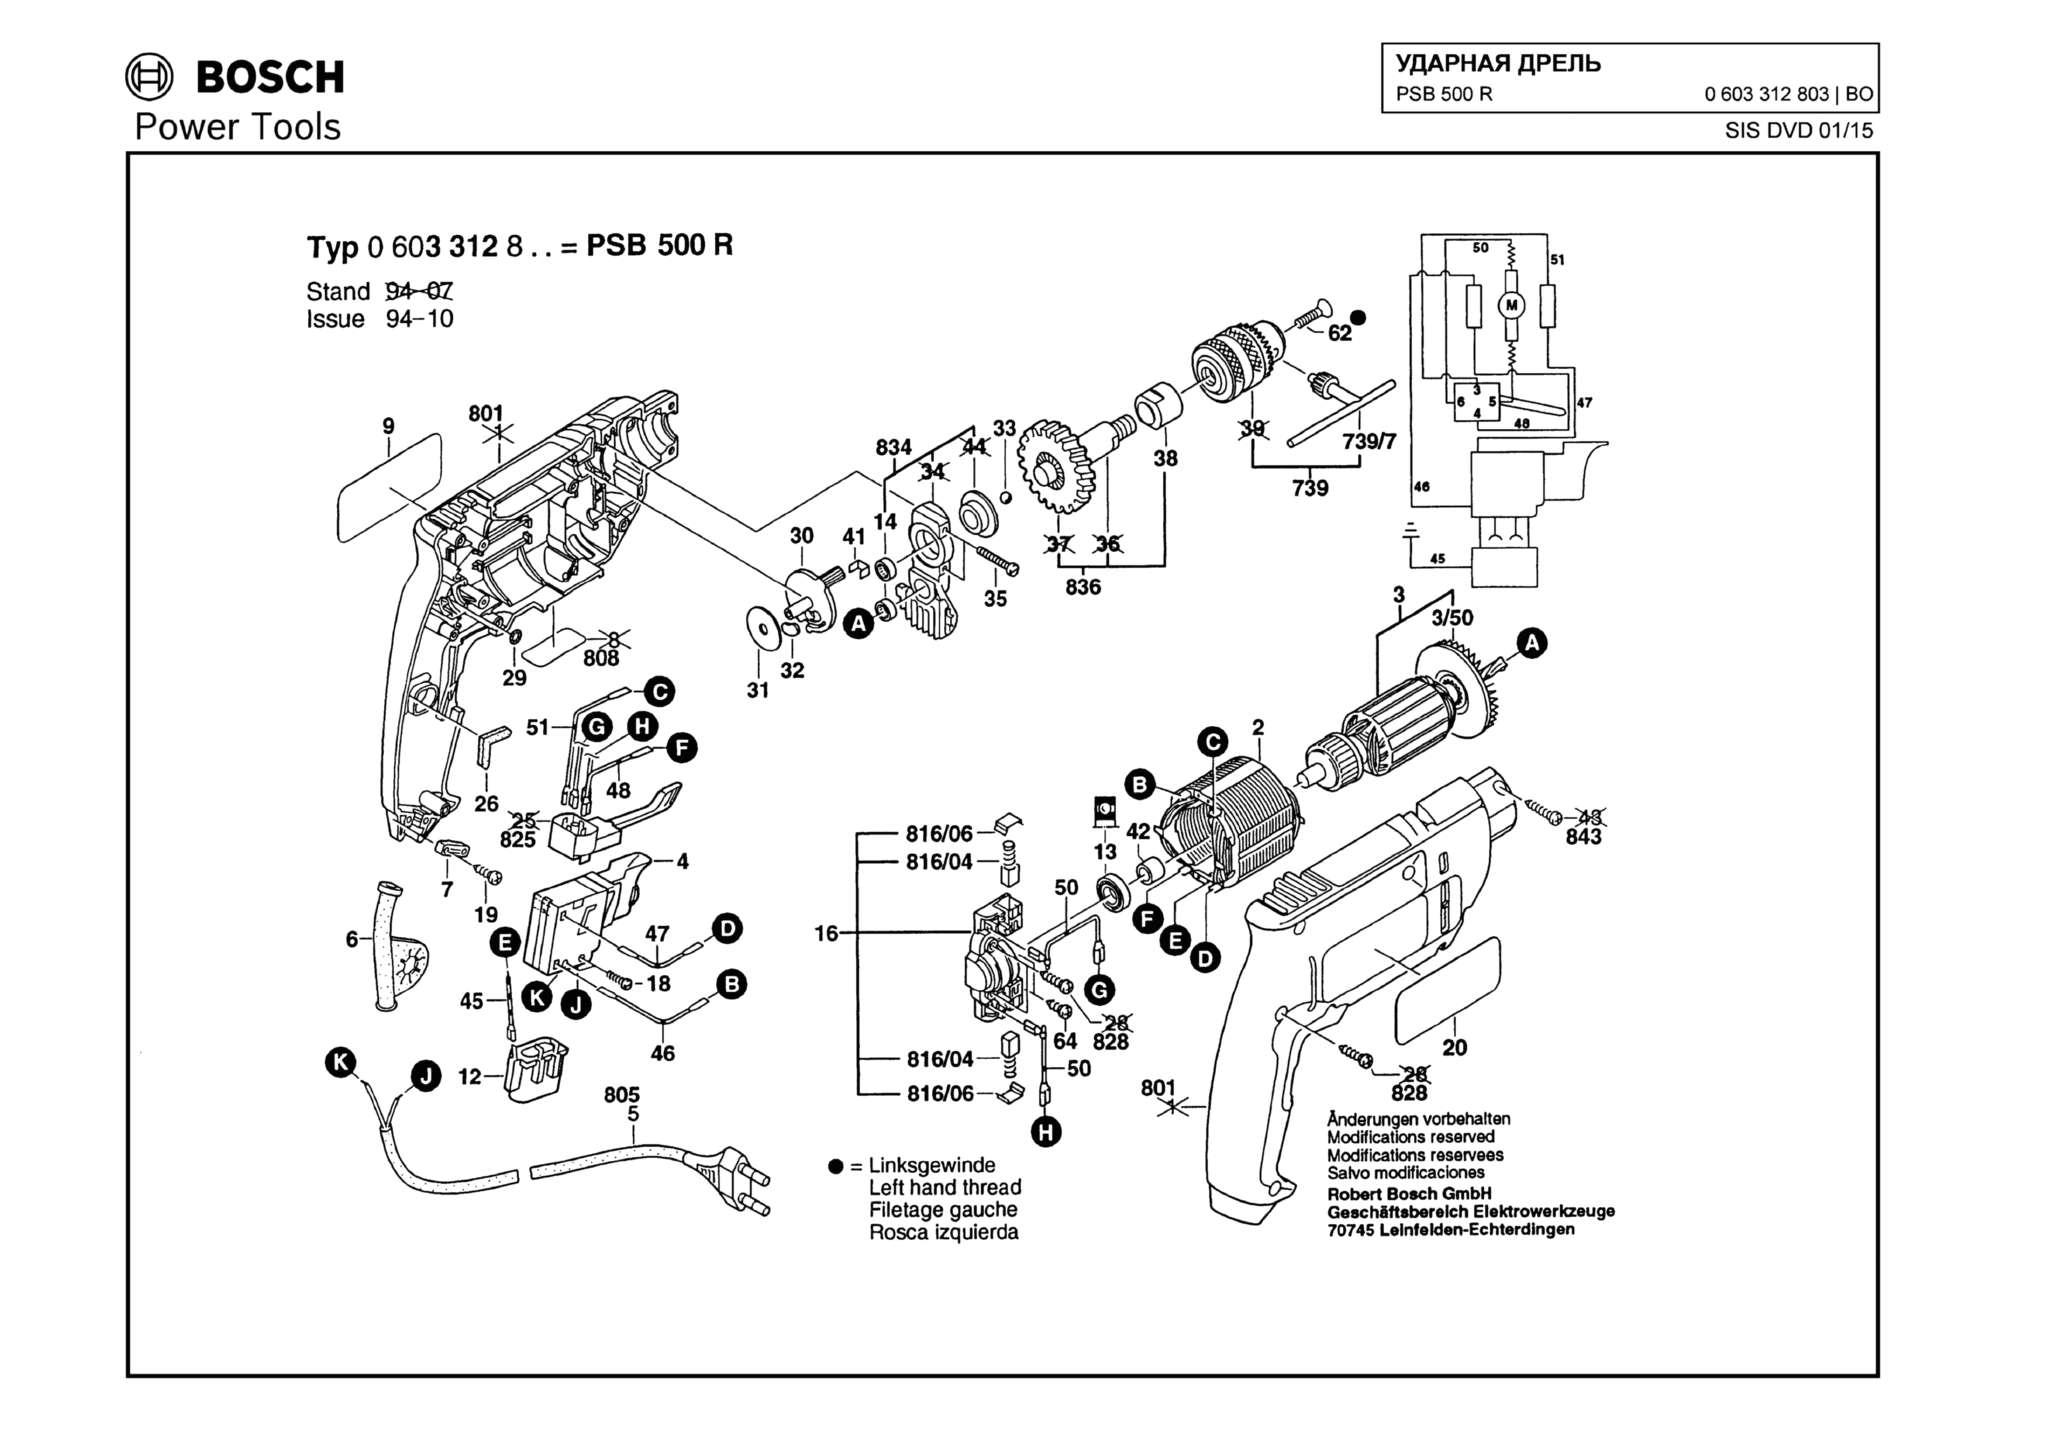 Запчасти, схема и деталировка Bosch PSB 500 R (ТИП 0603312803)